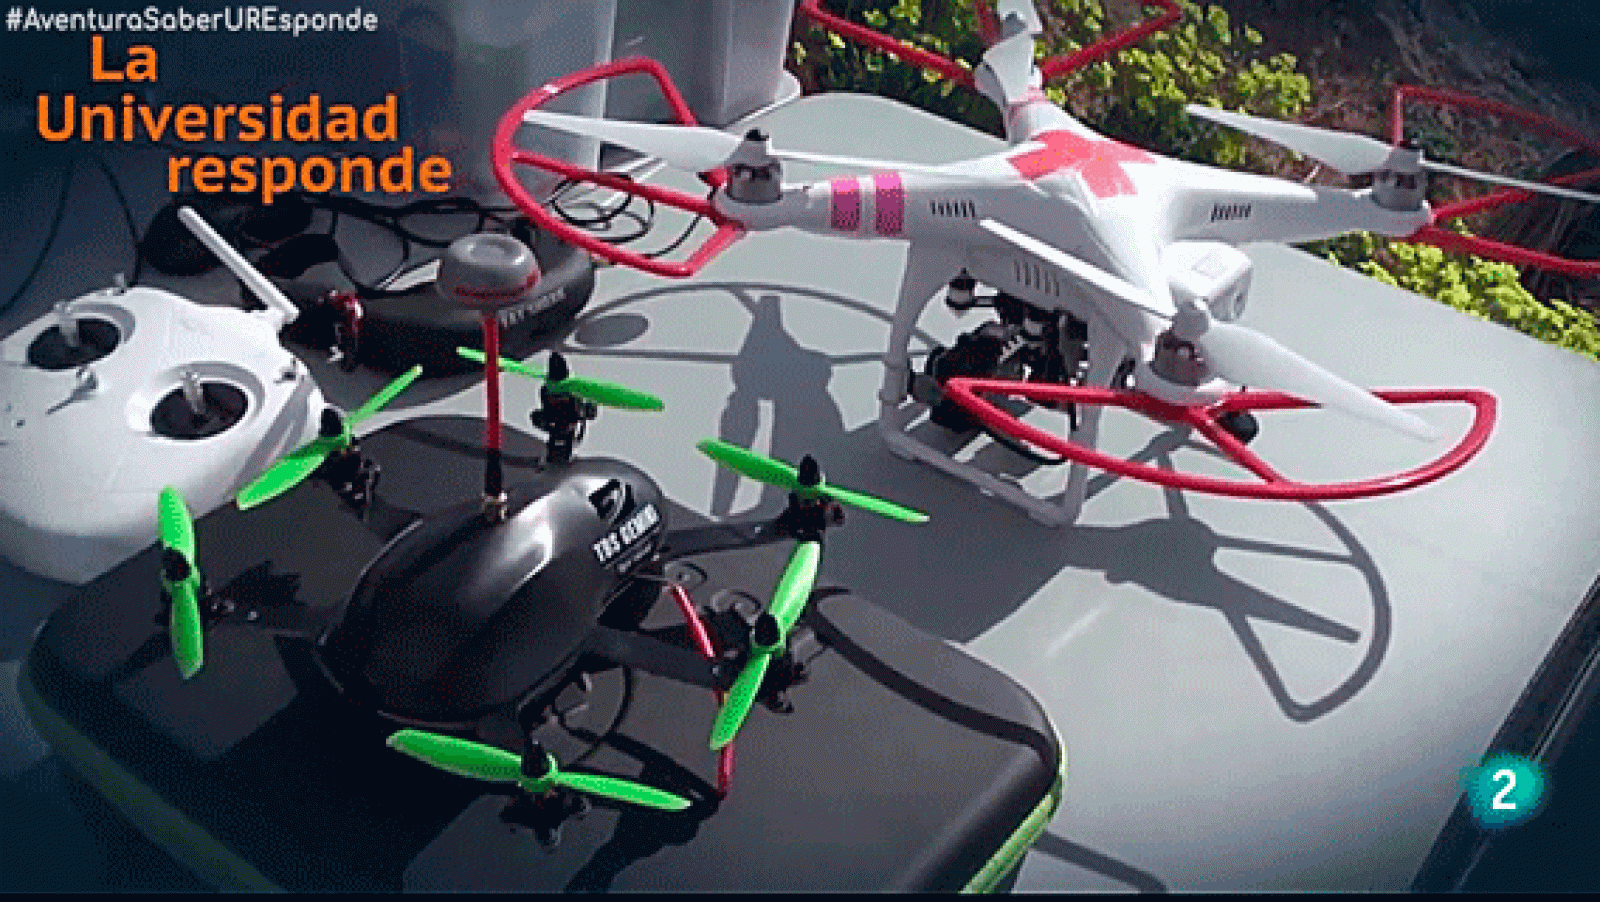 La aventura del saber - ¿Qué es un drone?